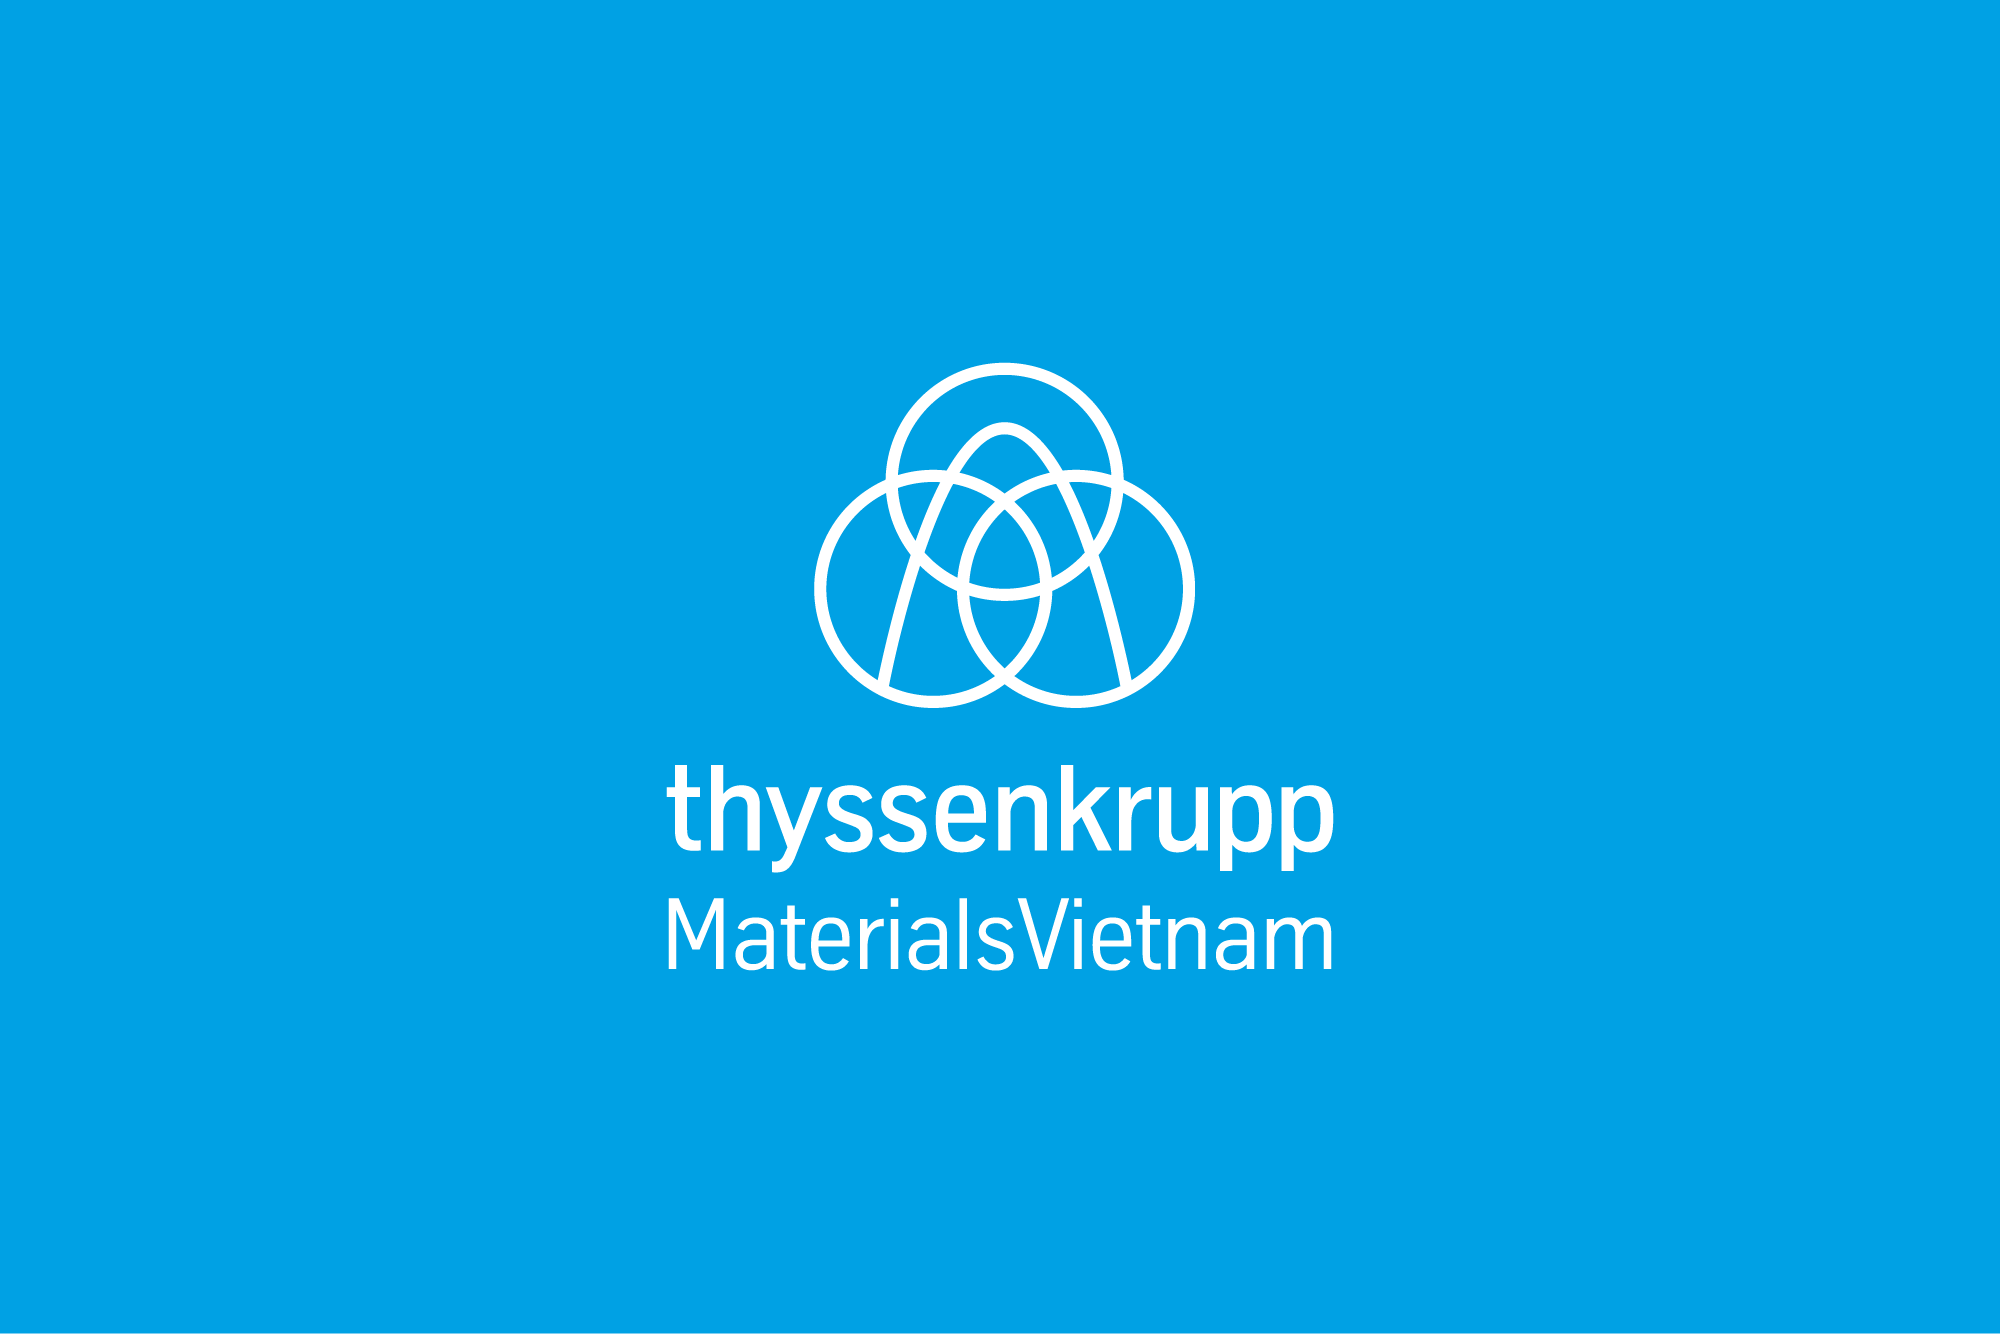 thyssenkrupp Materials Vietnam white logo on blue background